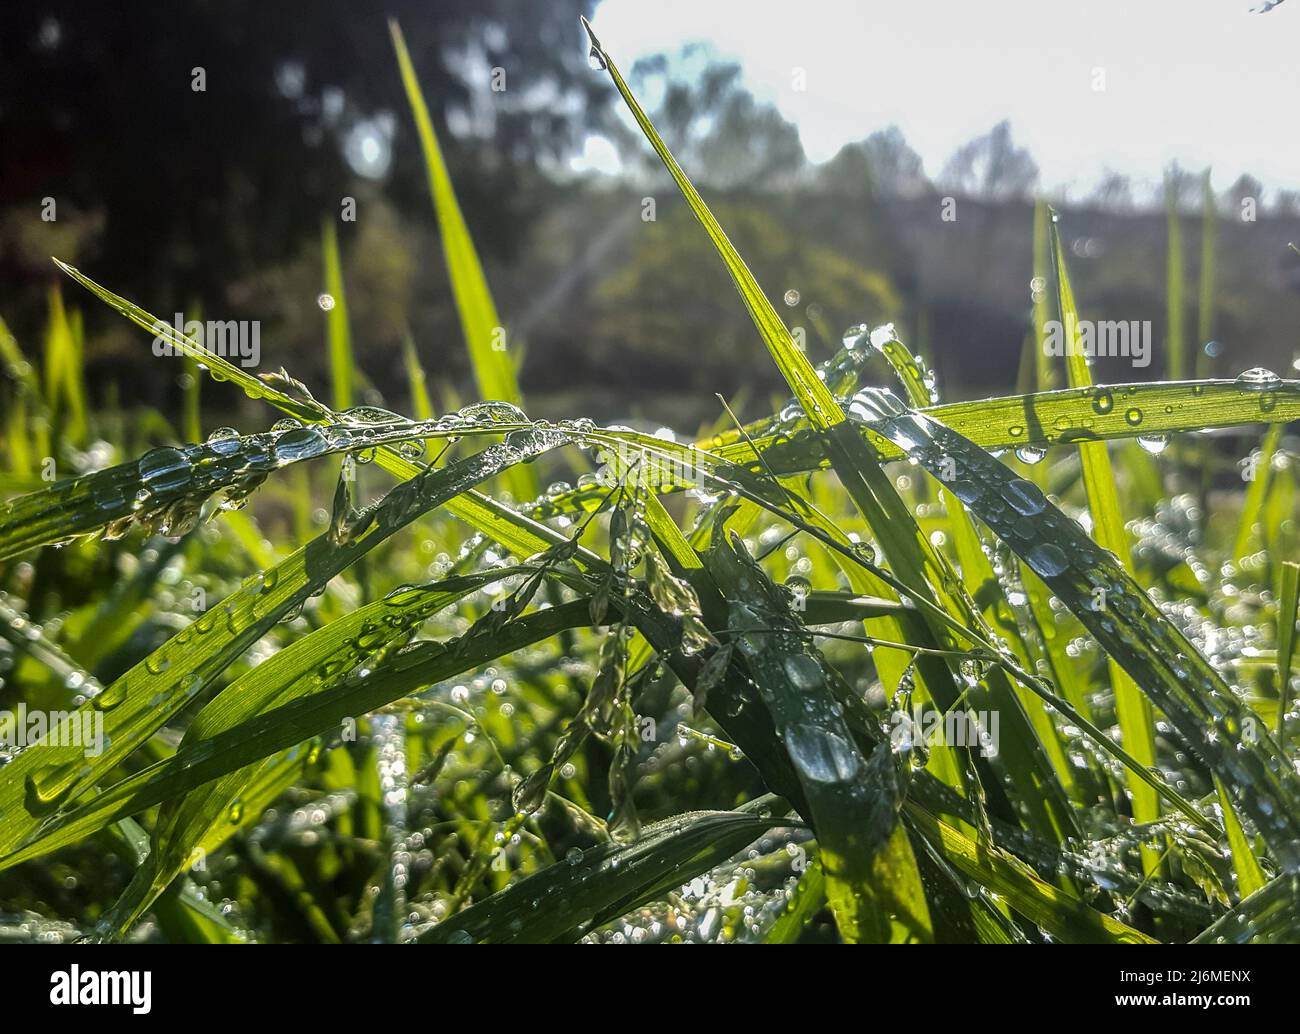 Hermosa hierba verde larga en un día de primavera lleno de gotas de rocío. Fondo oscuro Foto de stock